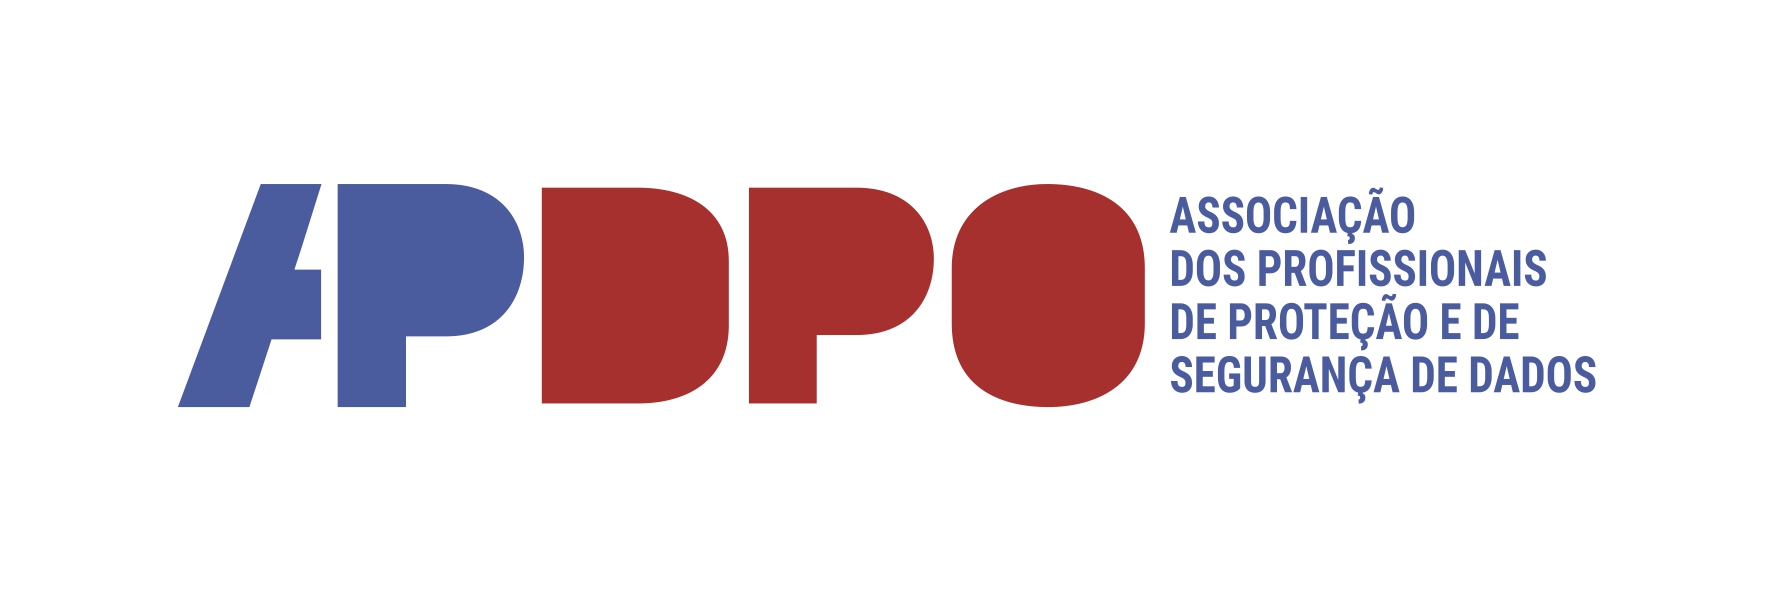 APDPO Portugal - Associação dos Profissionais de Proteção e de Segurança de Dados